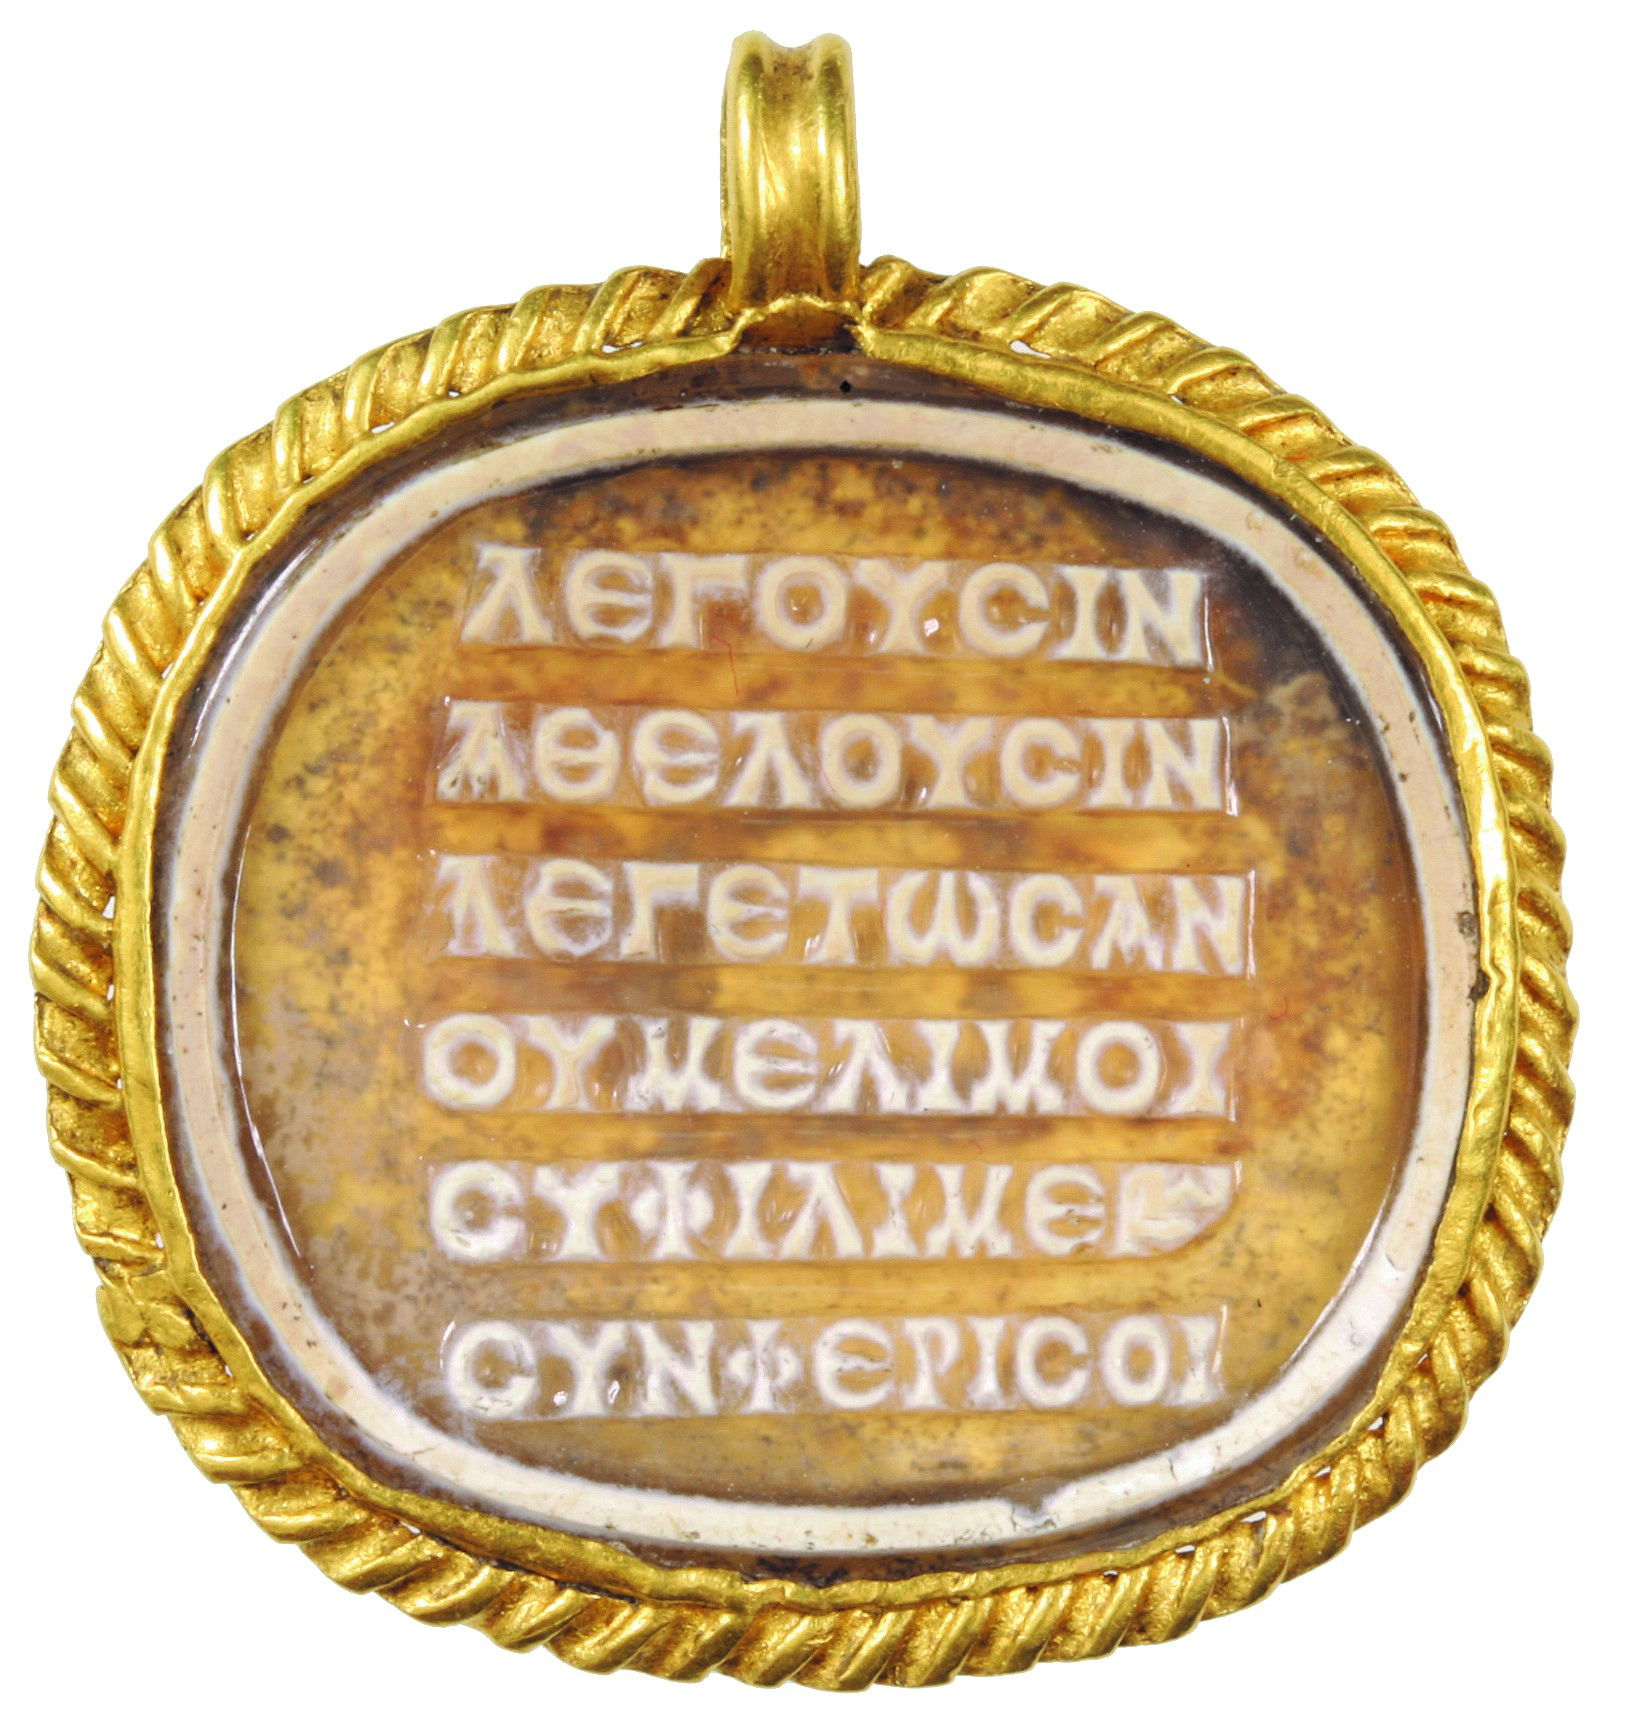 Ancient Greek poem gem from Aquincum Museum